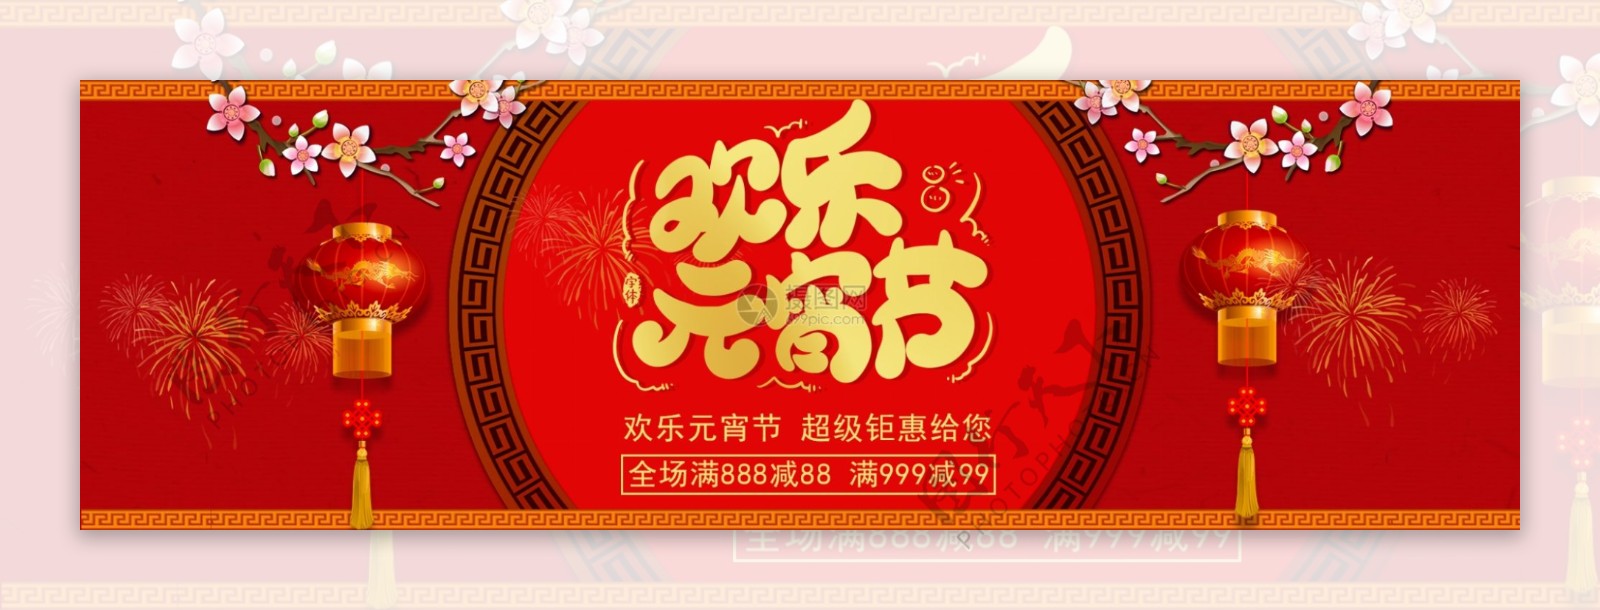 欢乐元宵节促销淘宝banner